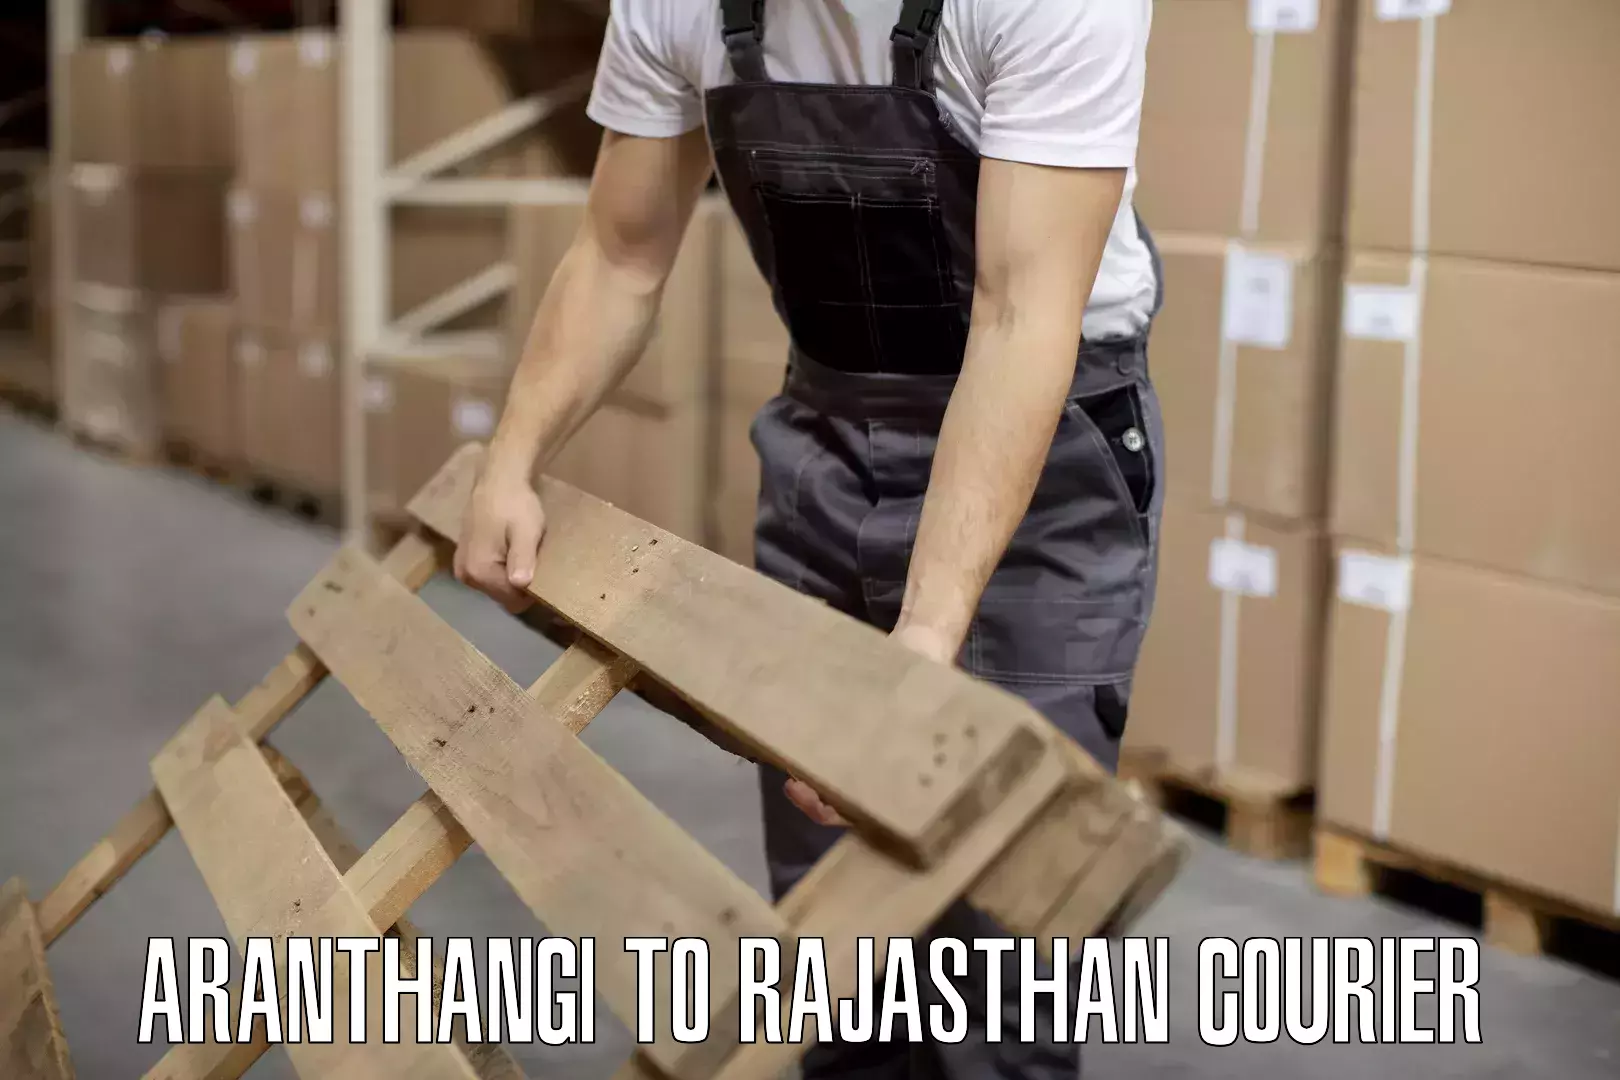 Luggage shipment tracking Aranthangi to Nawalgarh